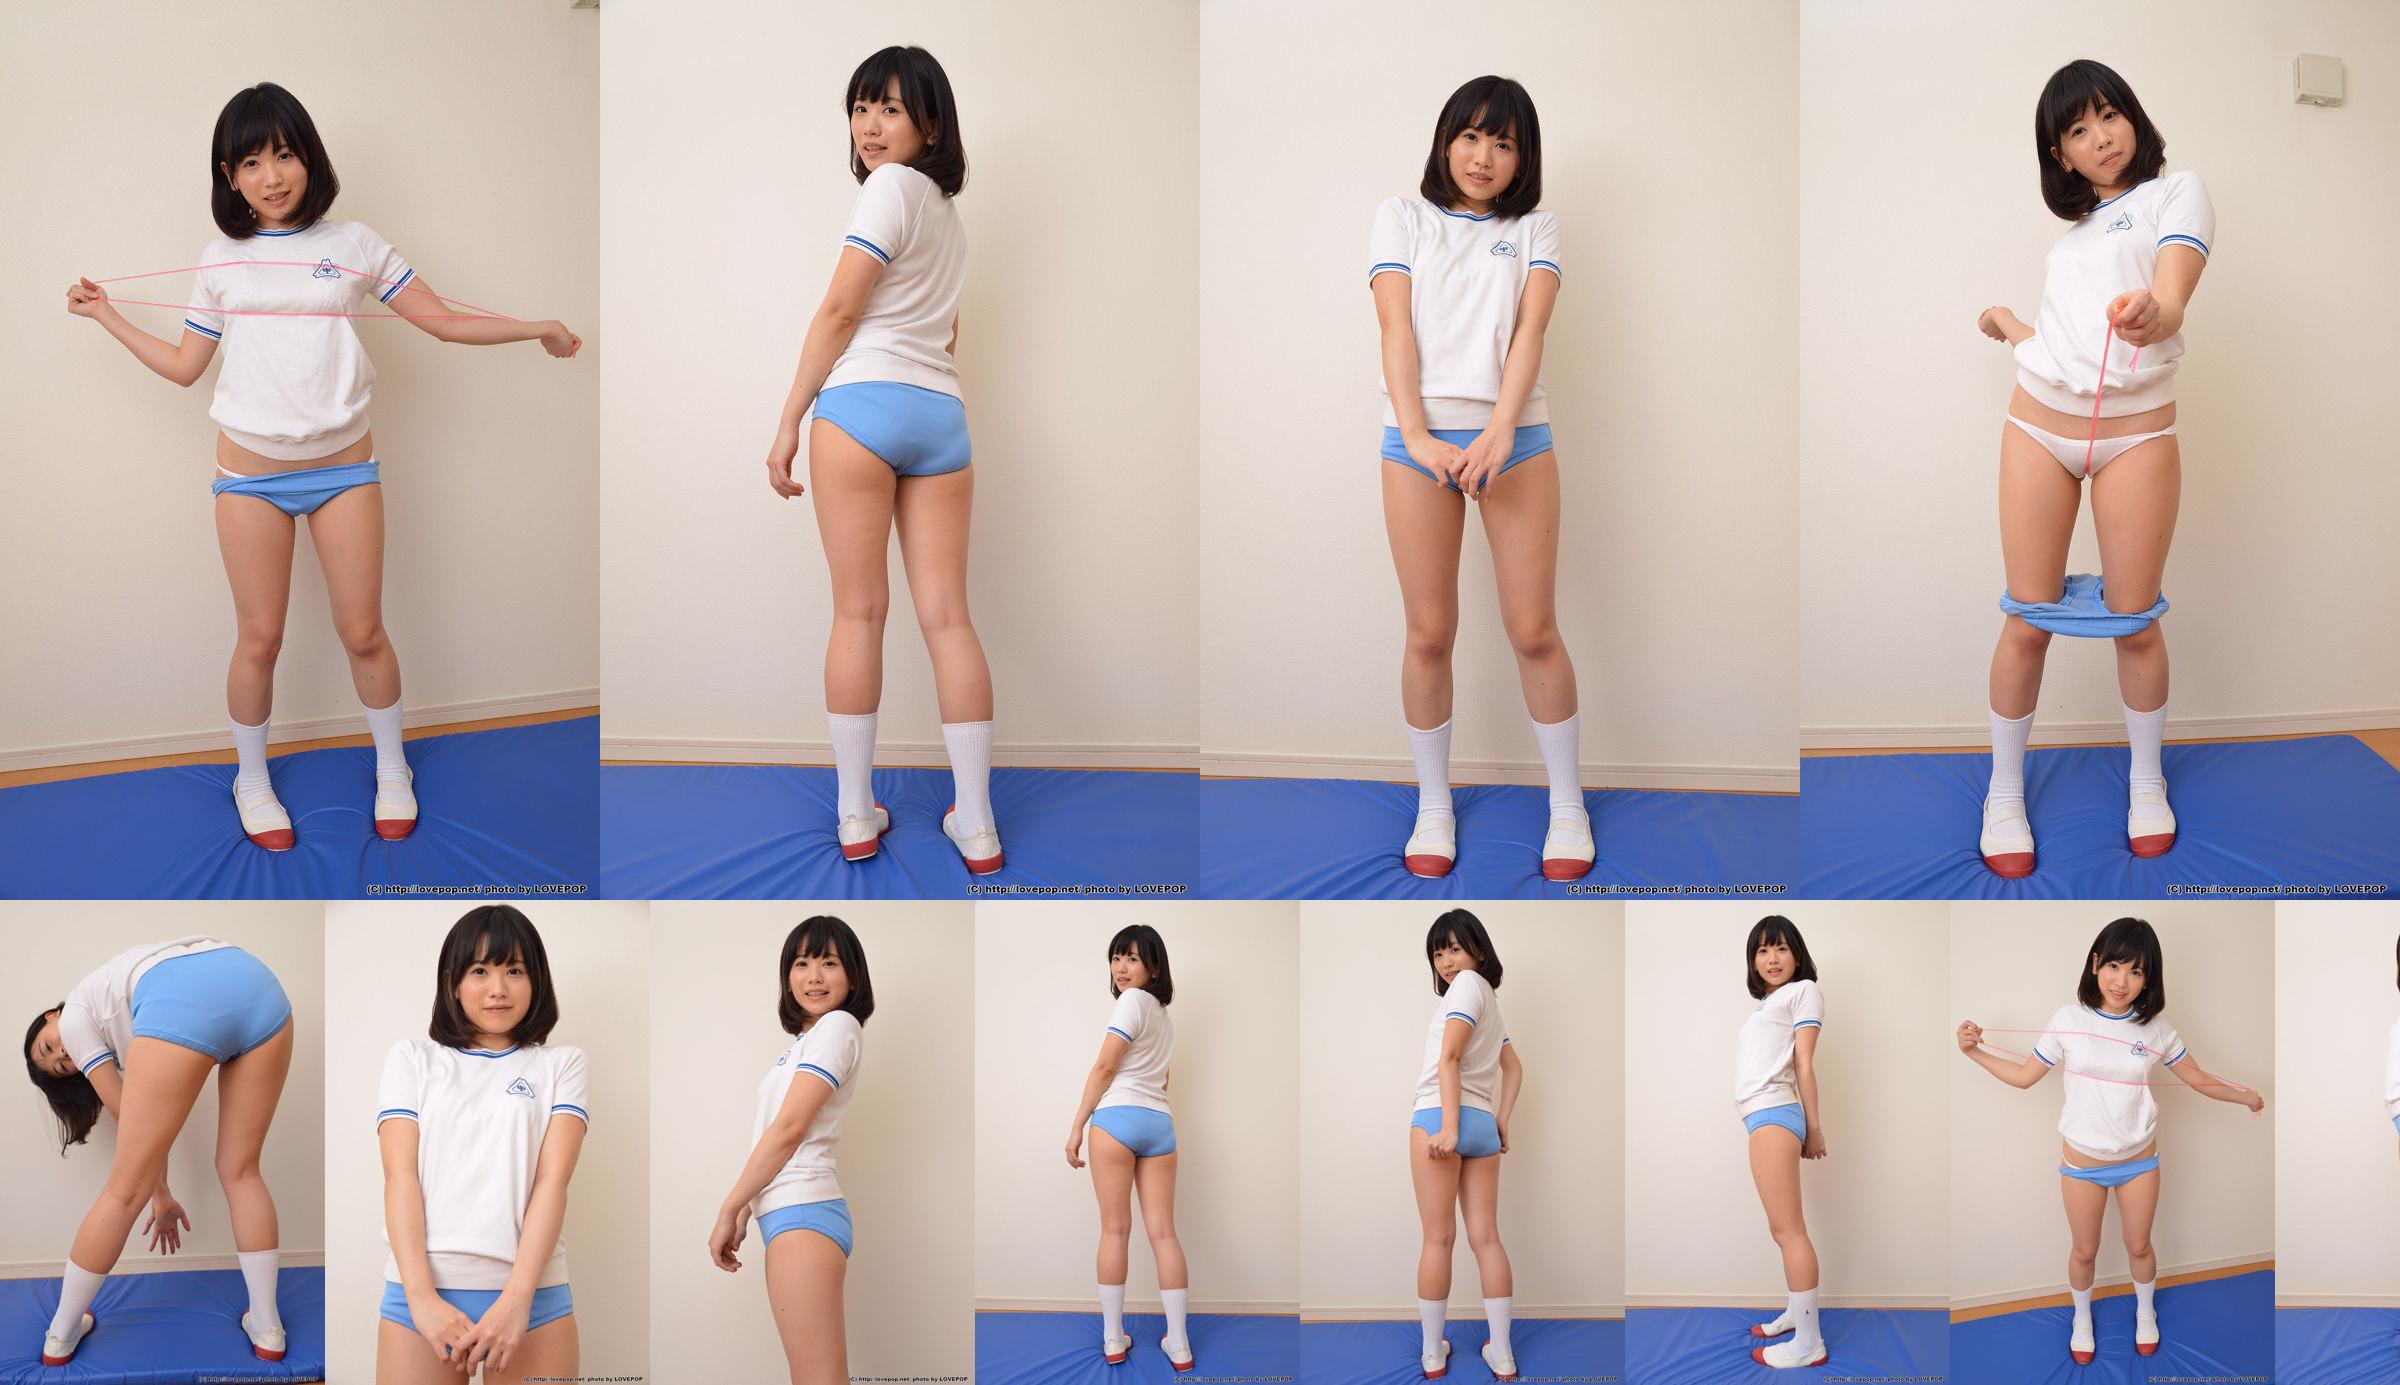 [LOVEPOP] Yuna Kimino Yuna Kimino Fotoset 01 No.a7c76c Seite 1